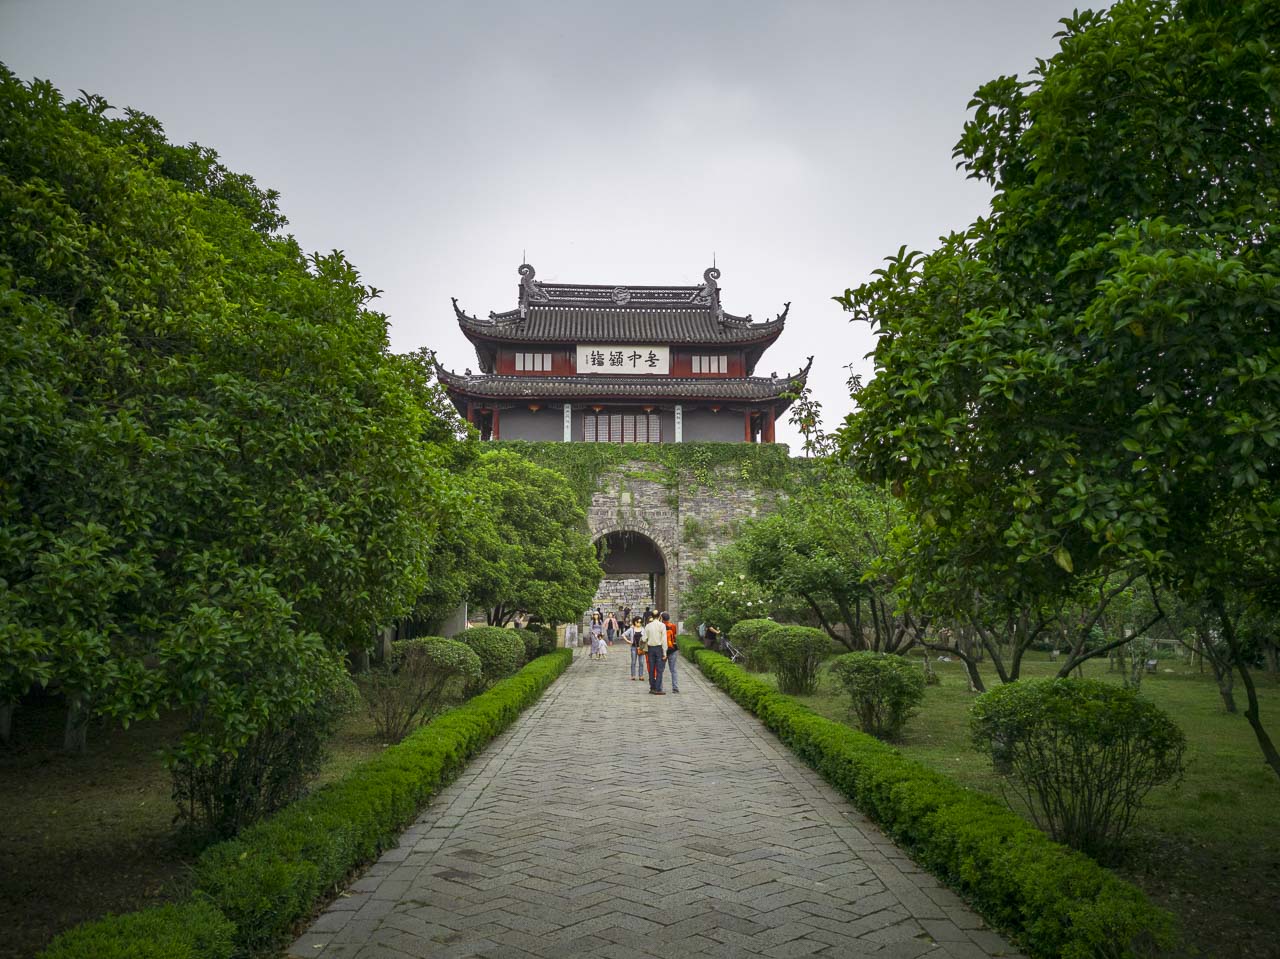 Panmen City Gate in Suzhou